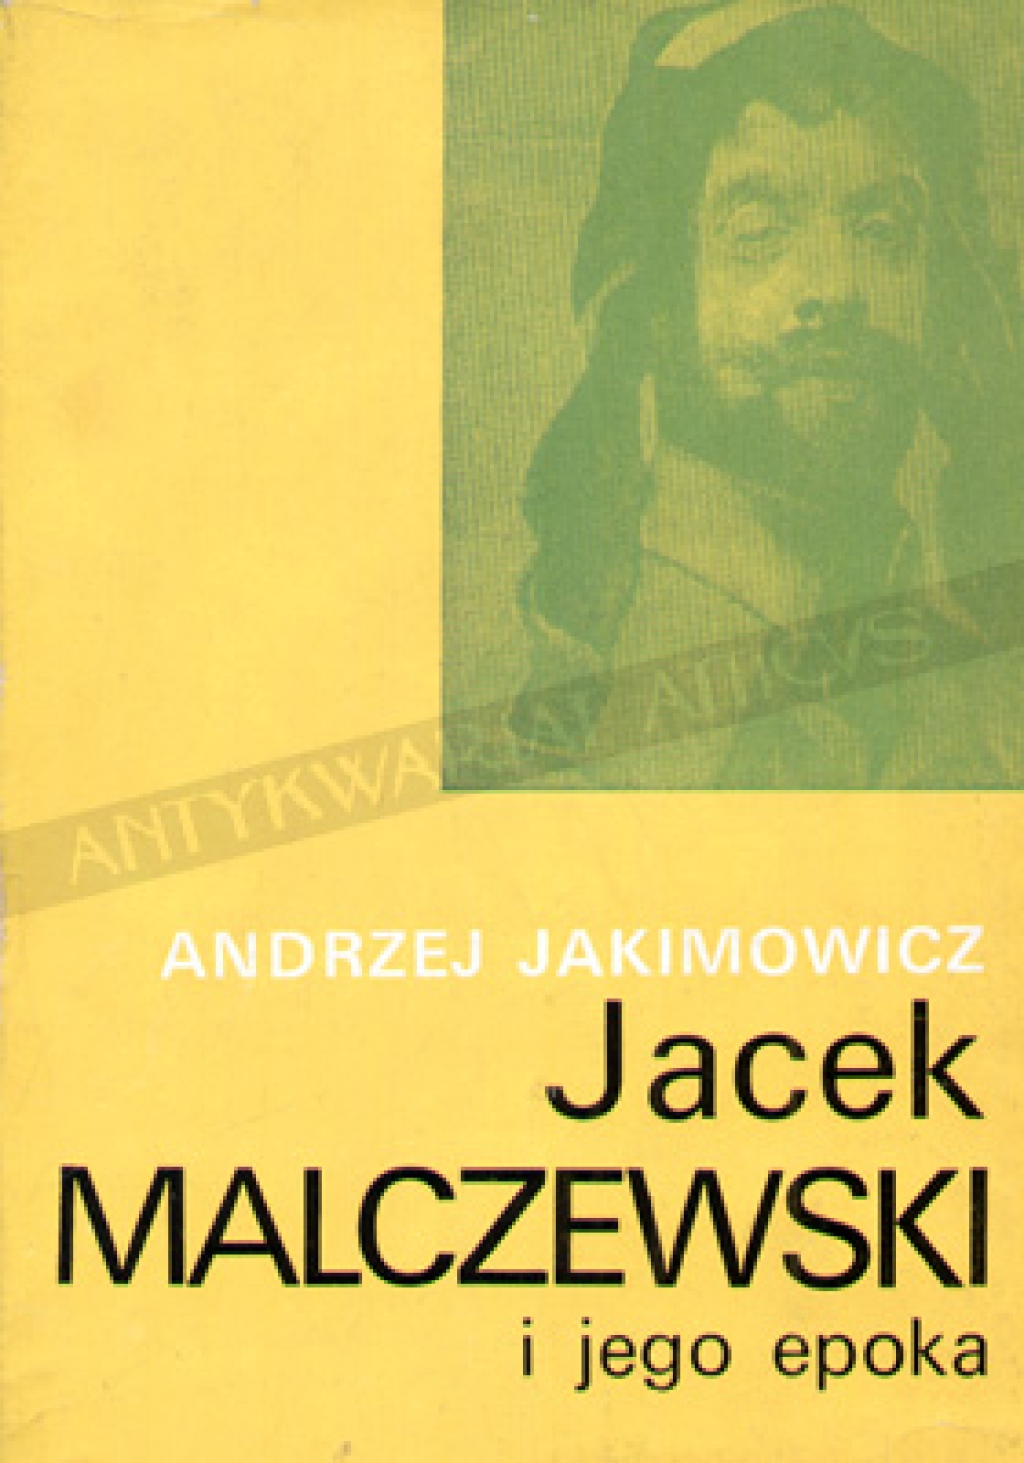 Jacek Malczewski i jego epoka